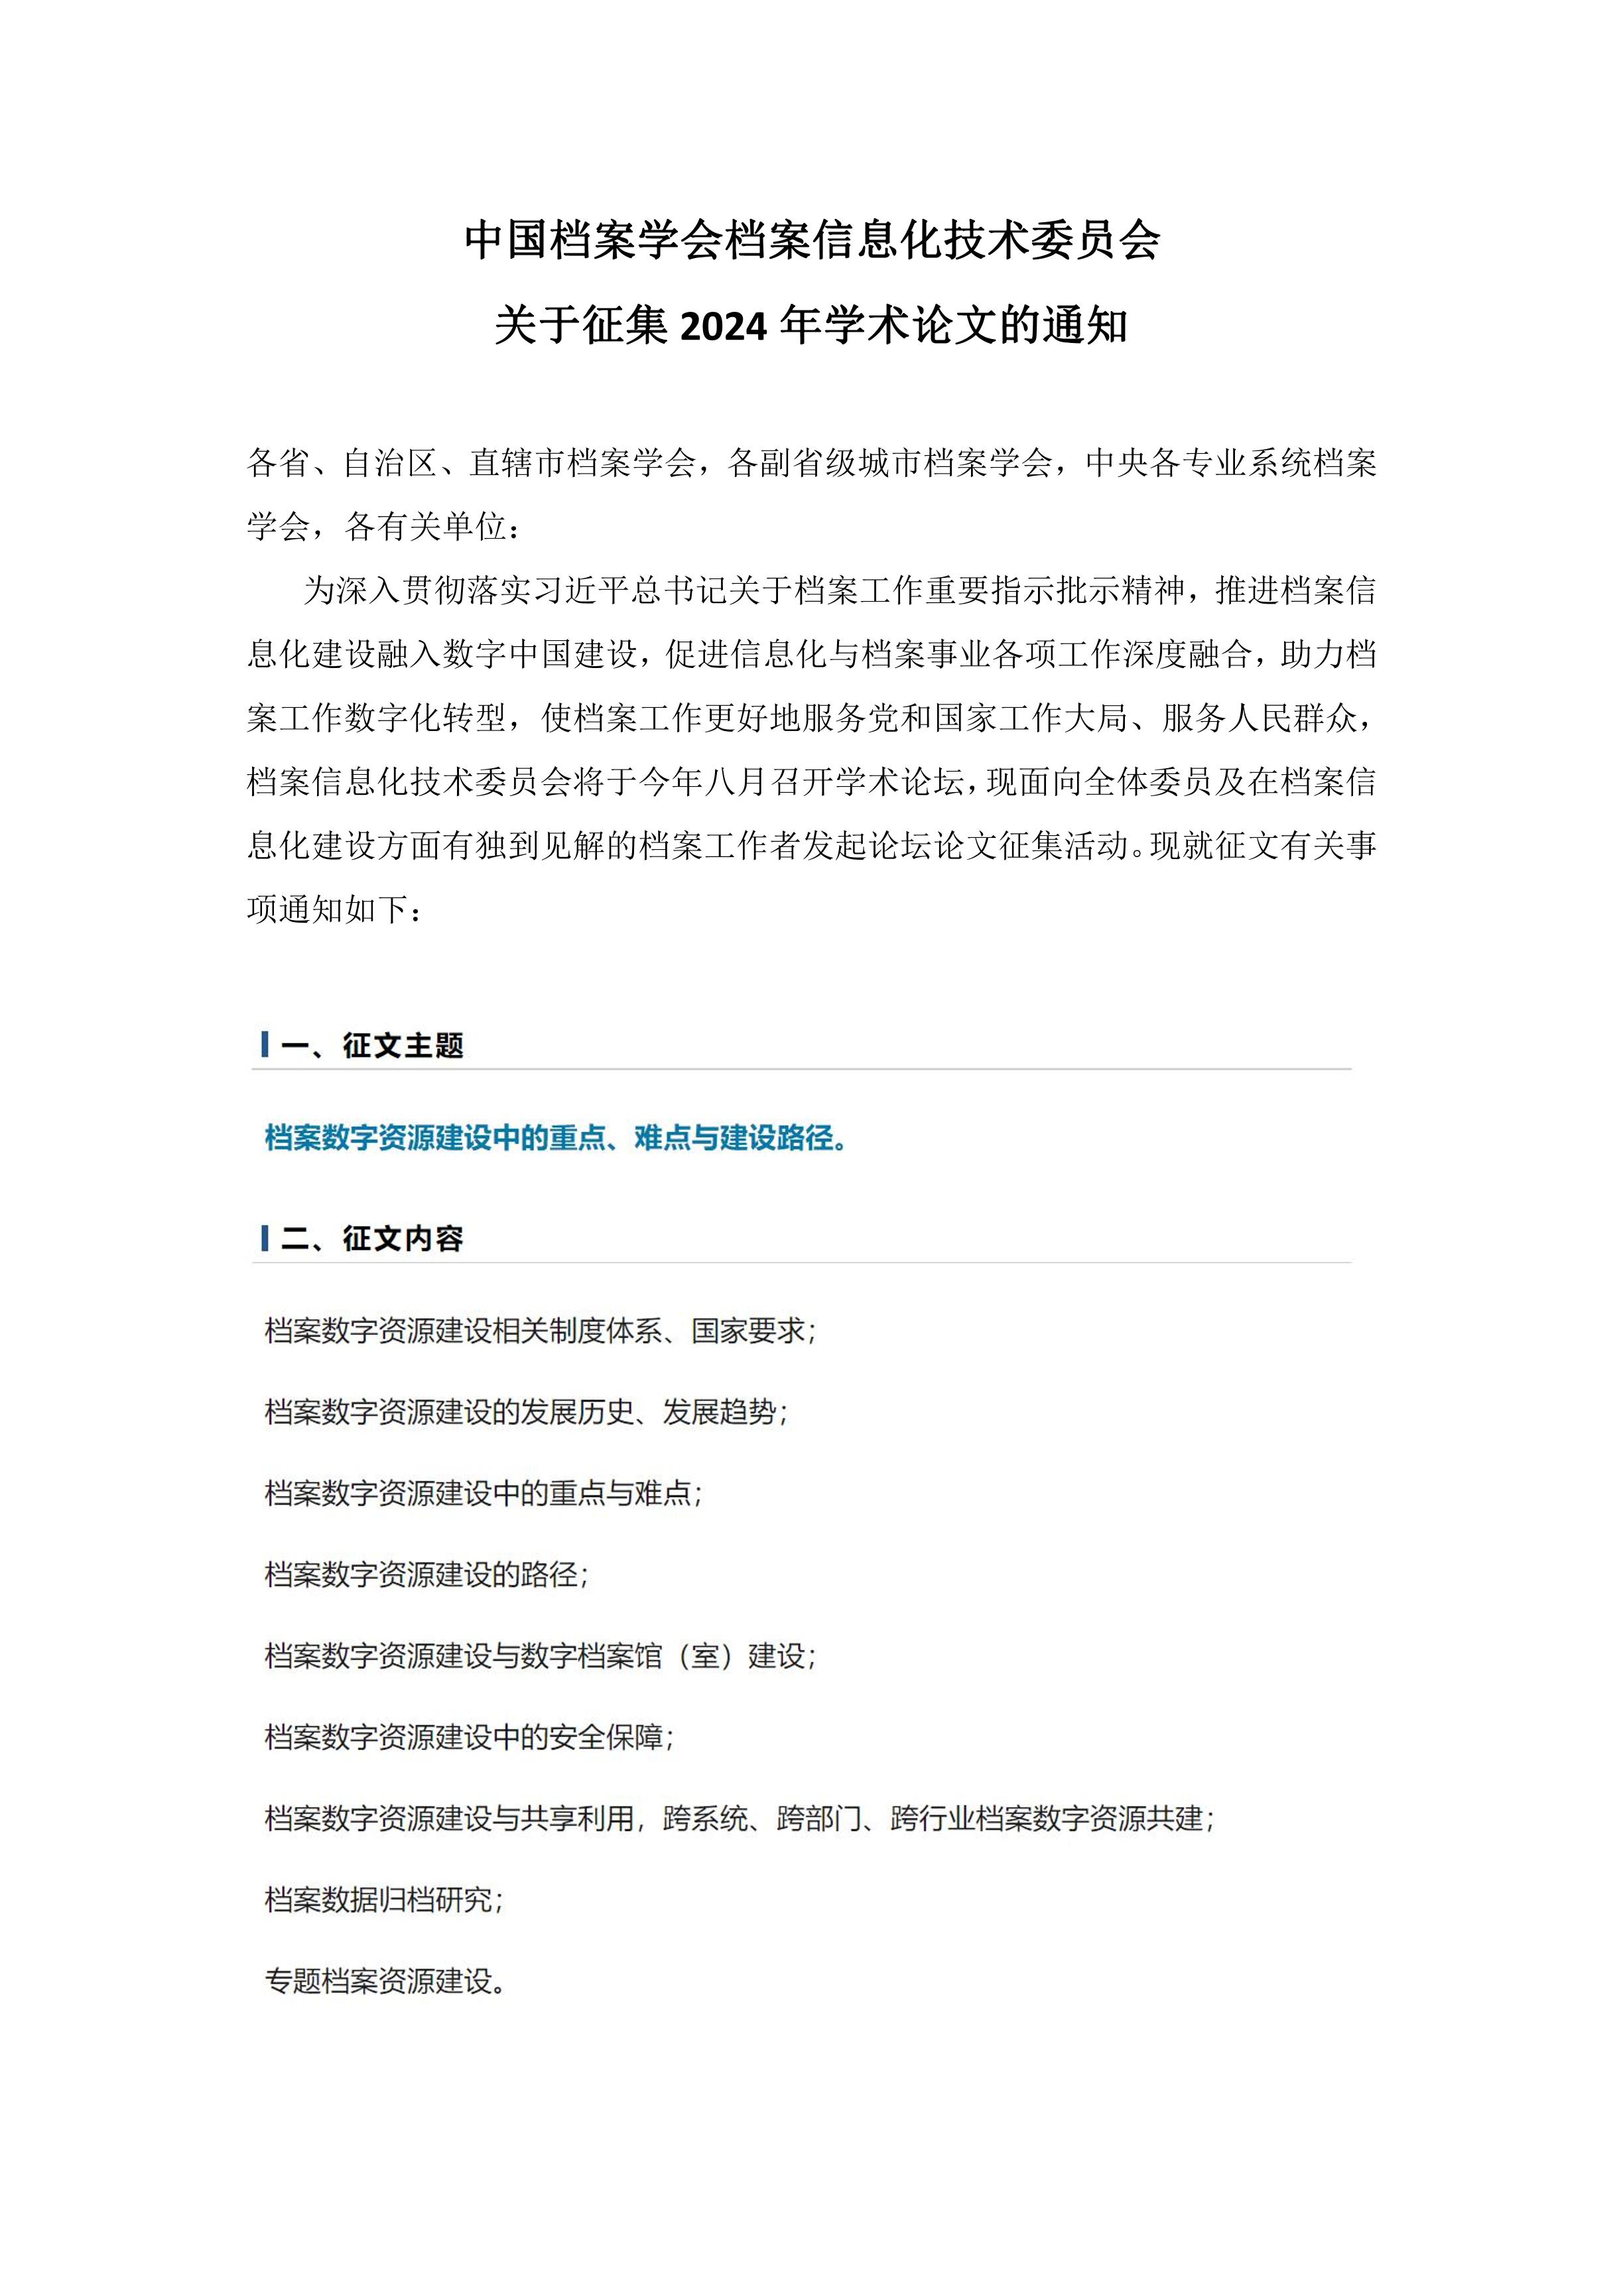 中国档案学会档案信息化技术委员会关于征集2024年学术论文的通知-0